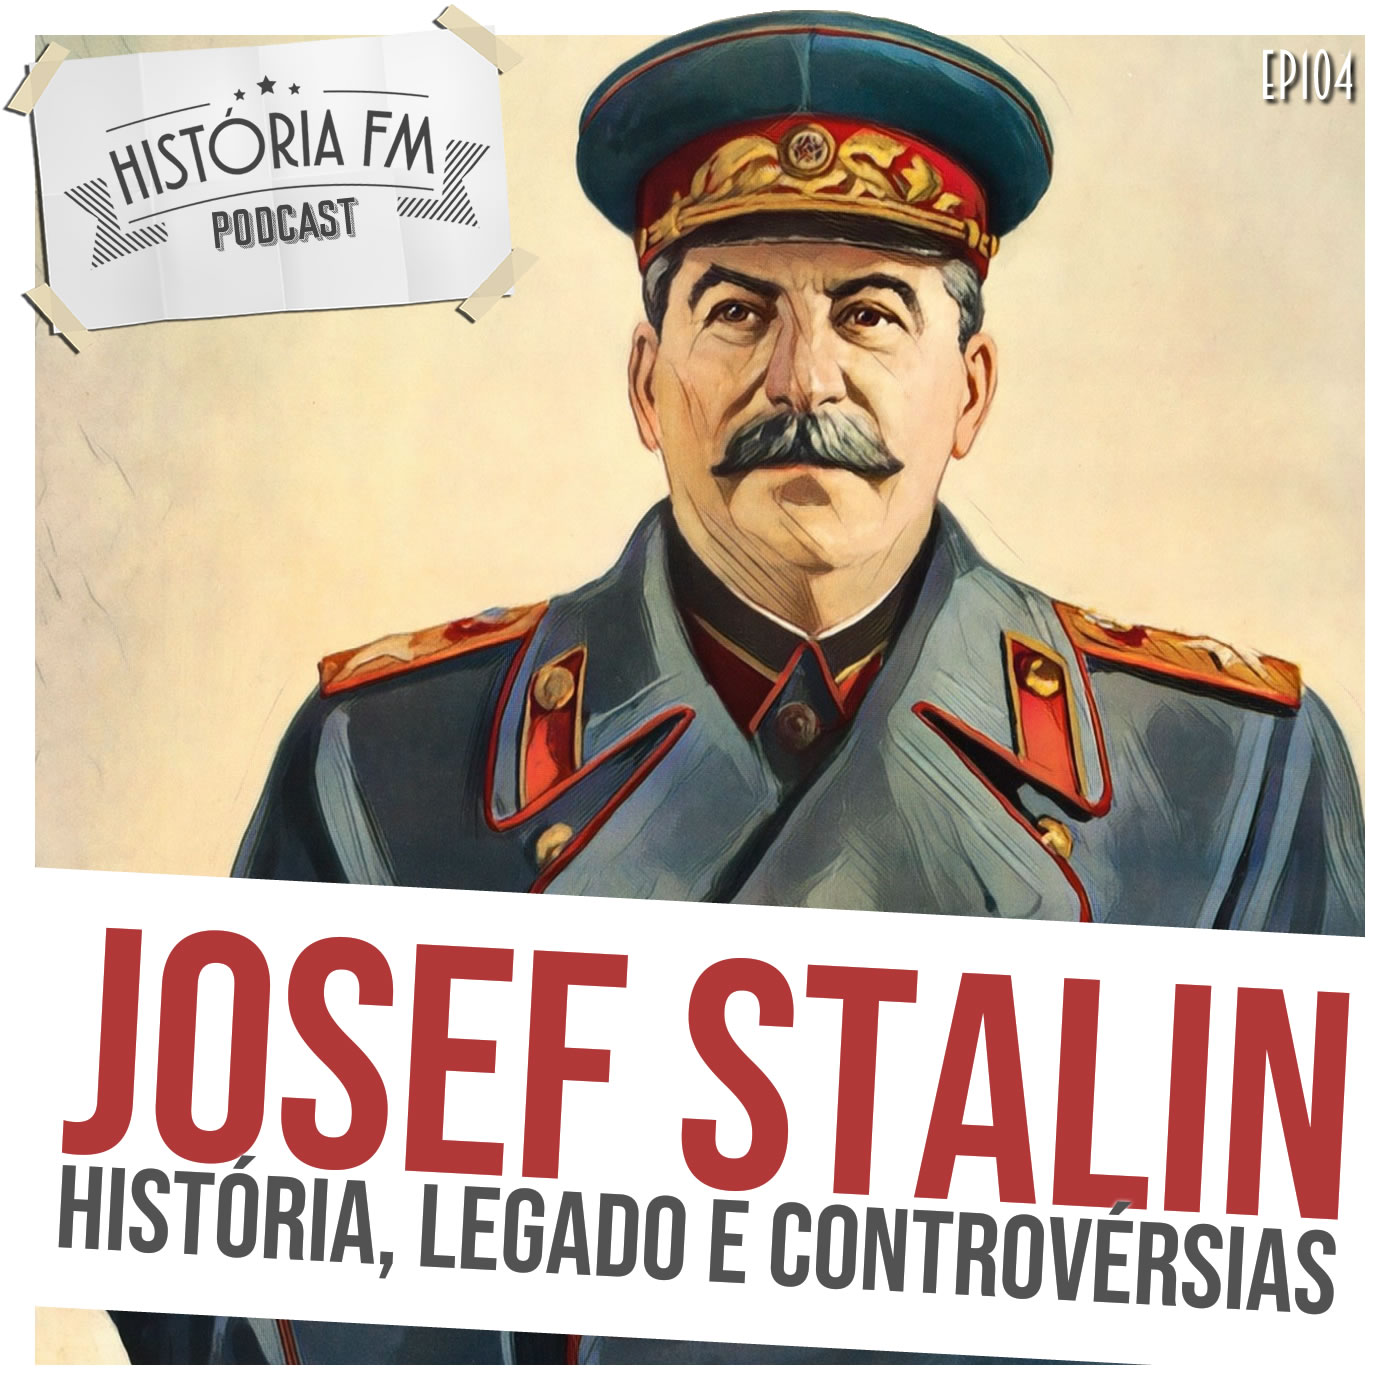 Josef Stalin: história, legado e controvérsias